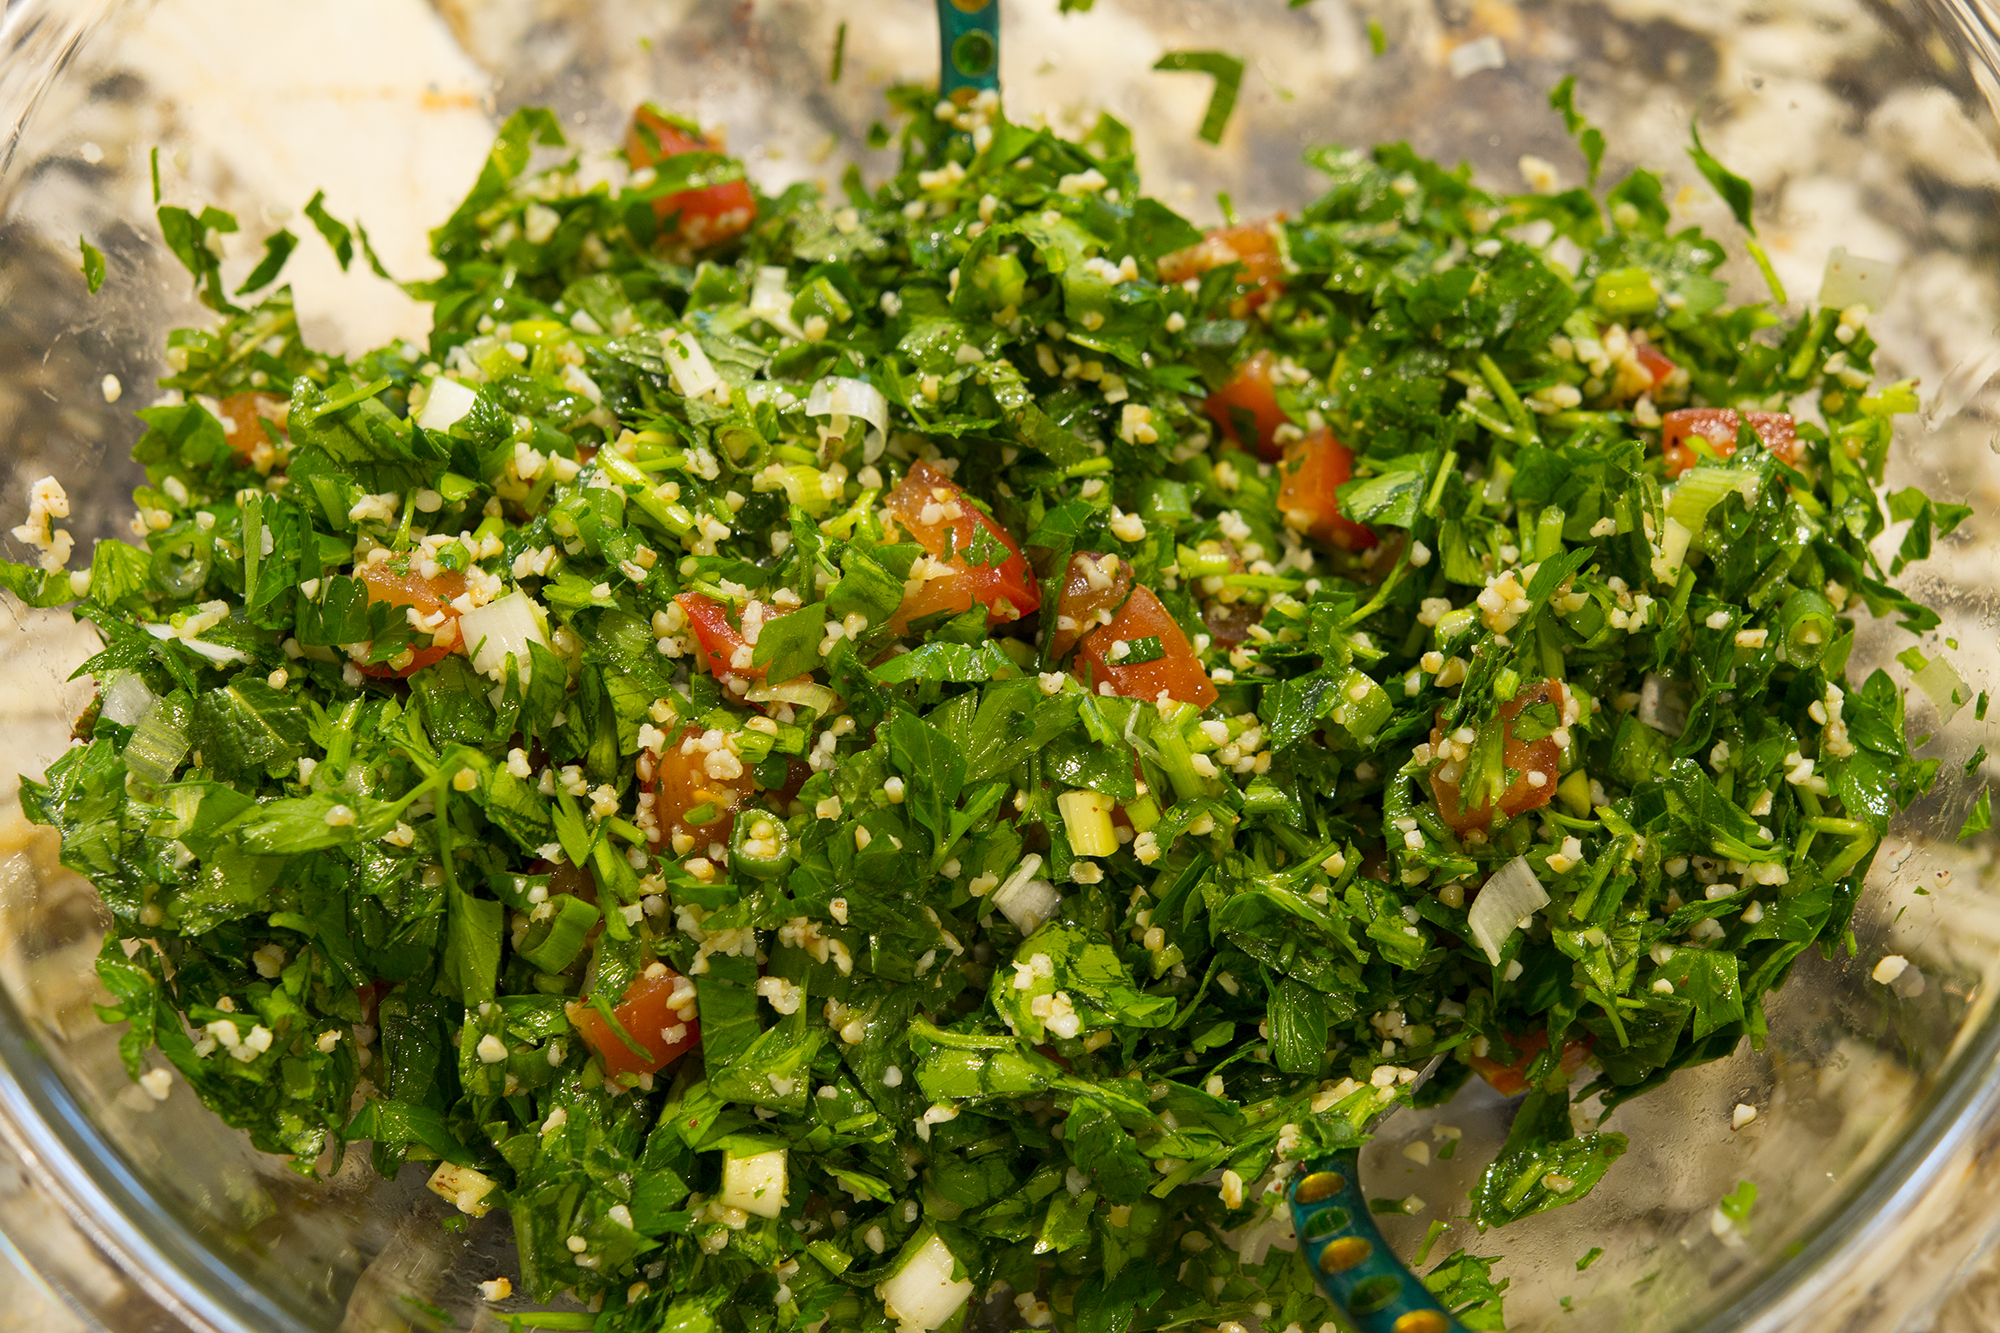 Easy to make Tabouleh - Parsley & Mint Salad - Kravings Food Adventures